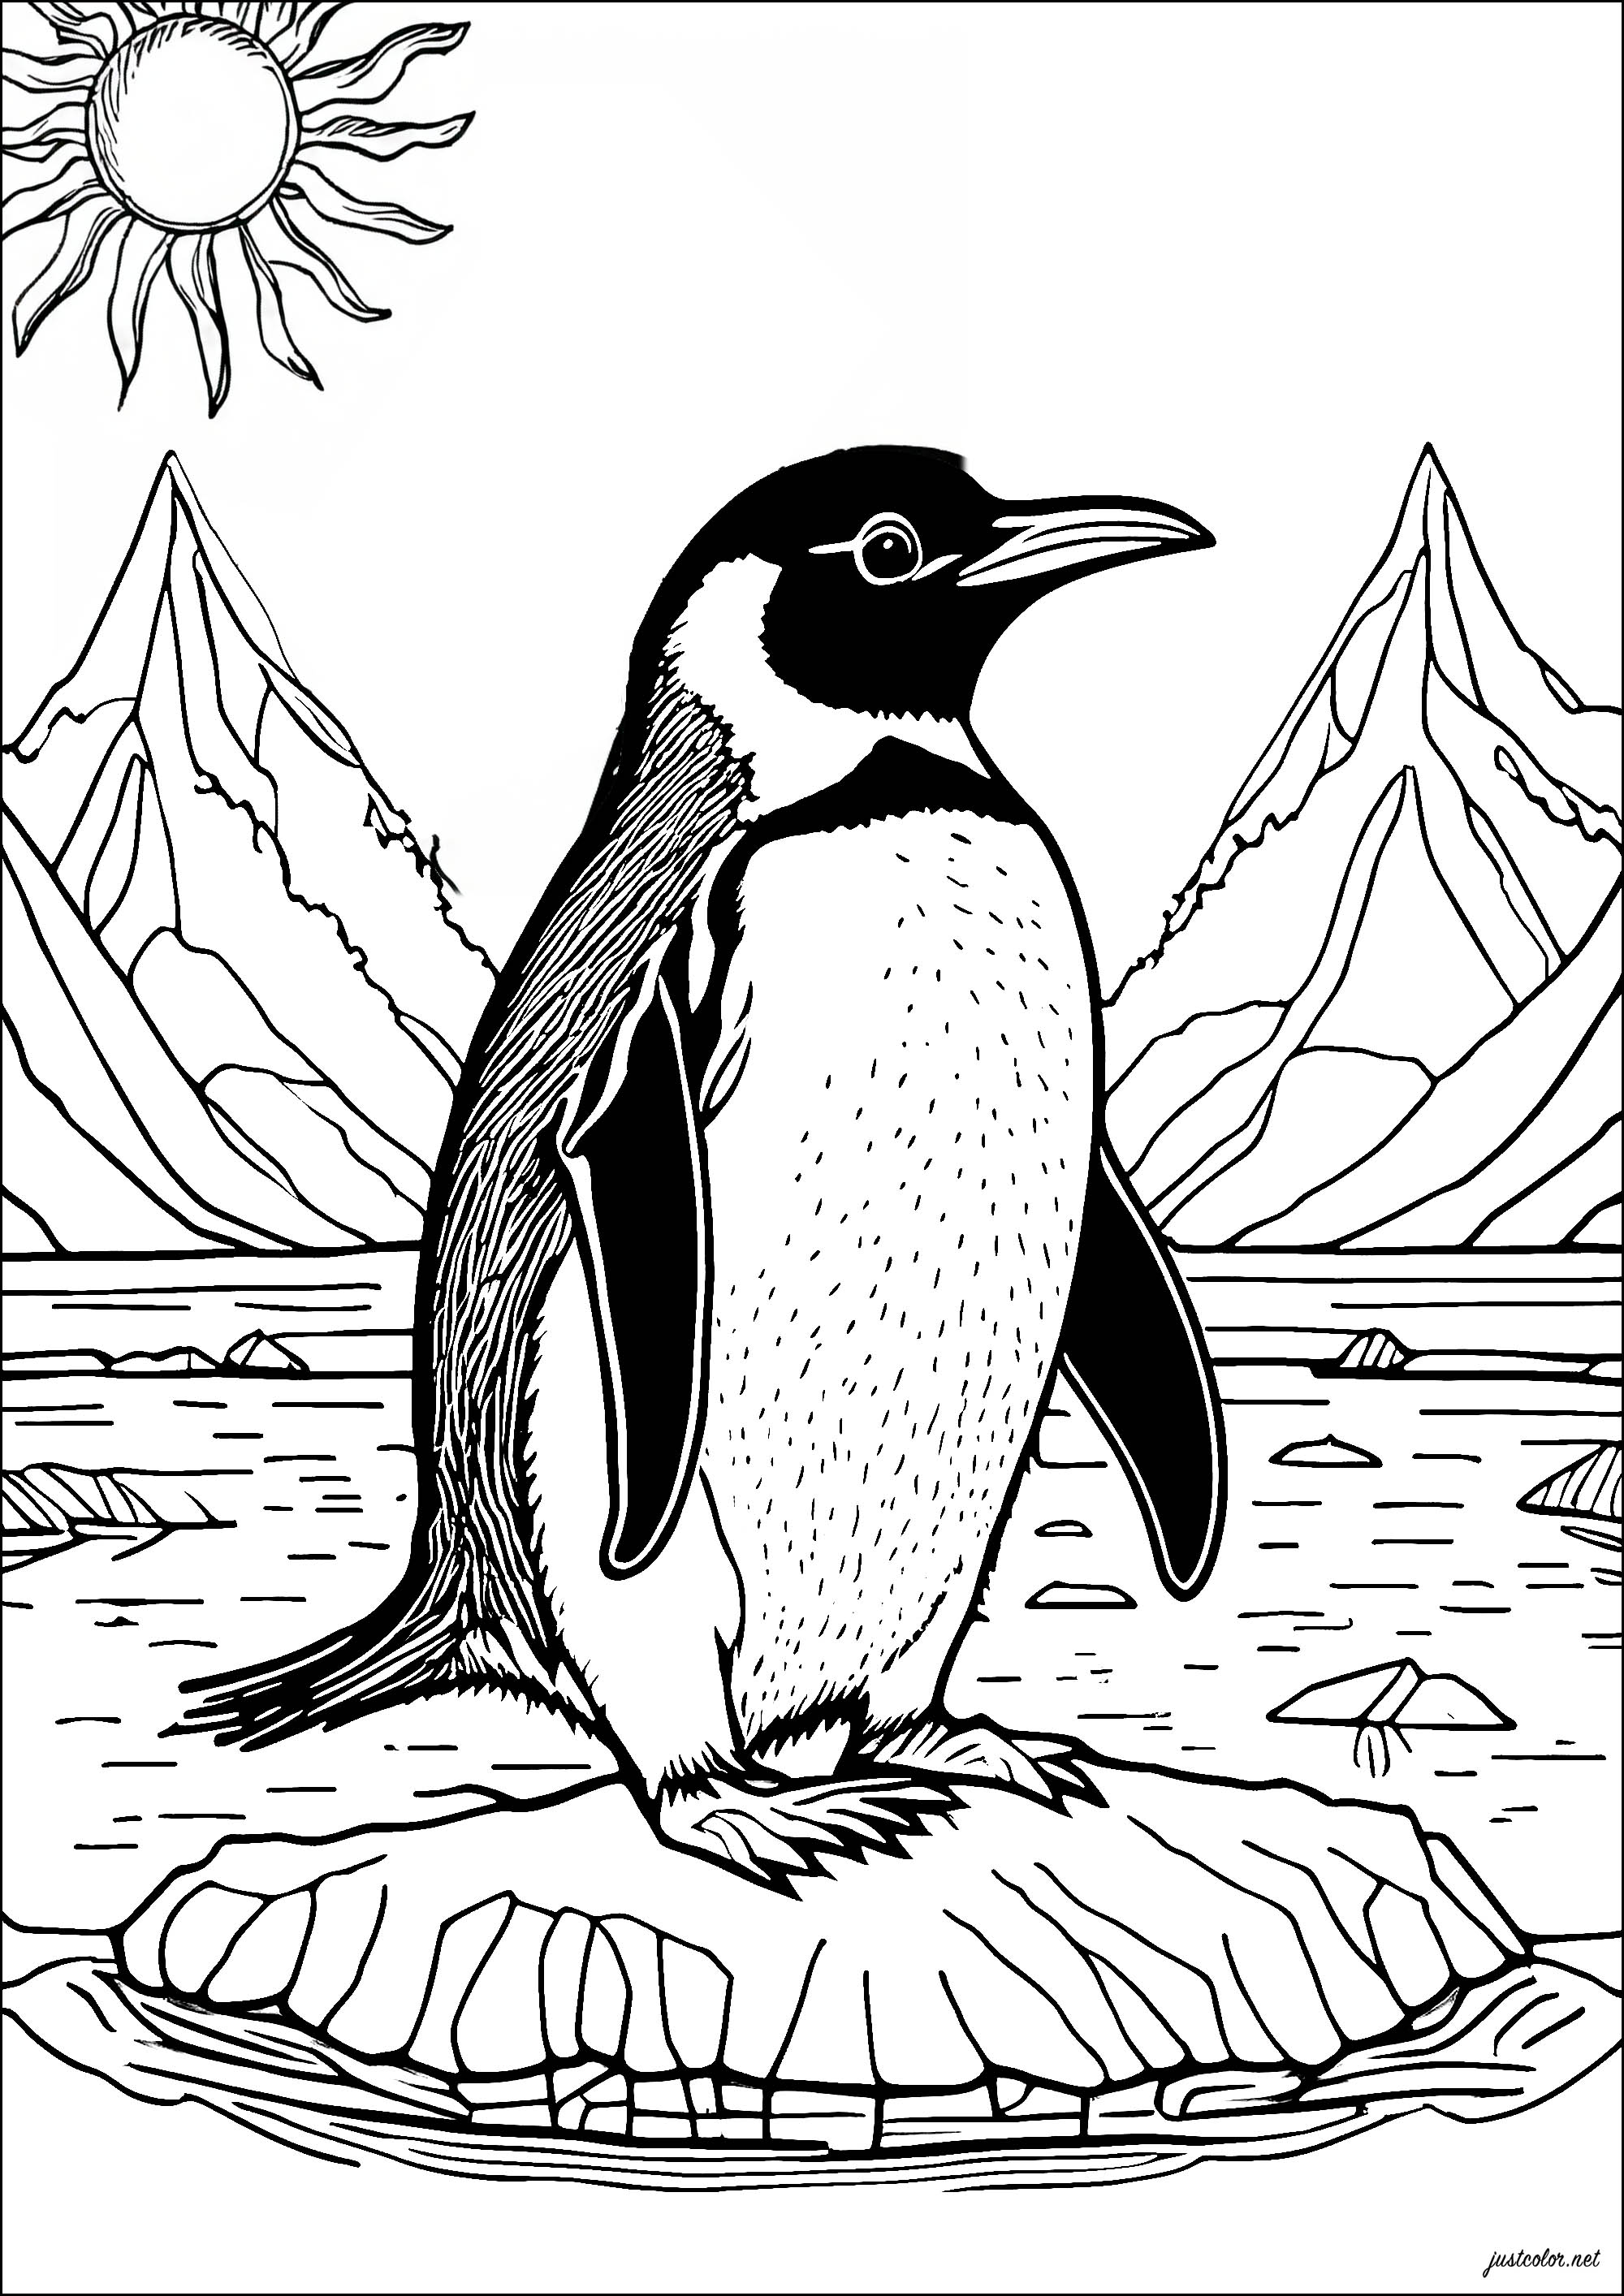 Un bel pinguino su un blocco di ghiaccio. Ritrovarsi sulla banchisa con questa bella pagina da colorare